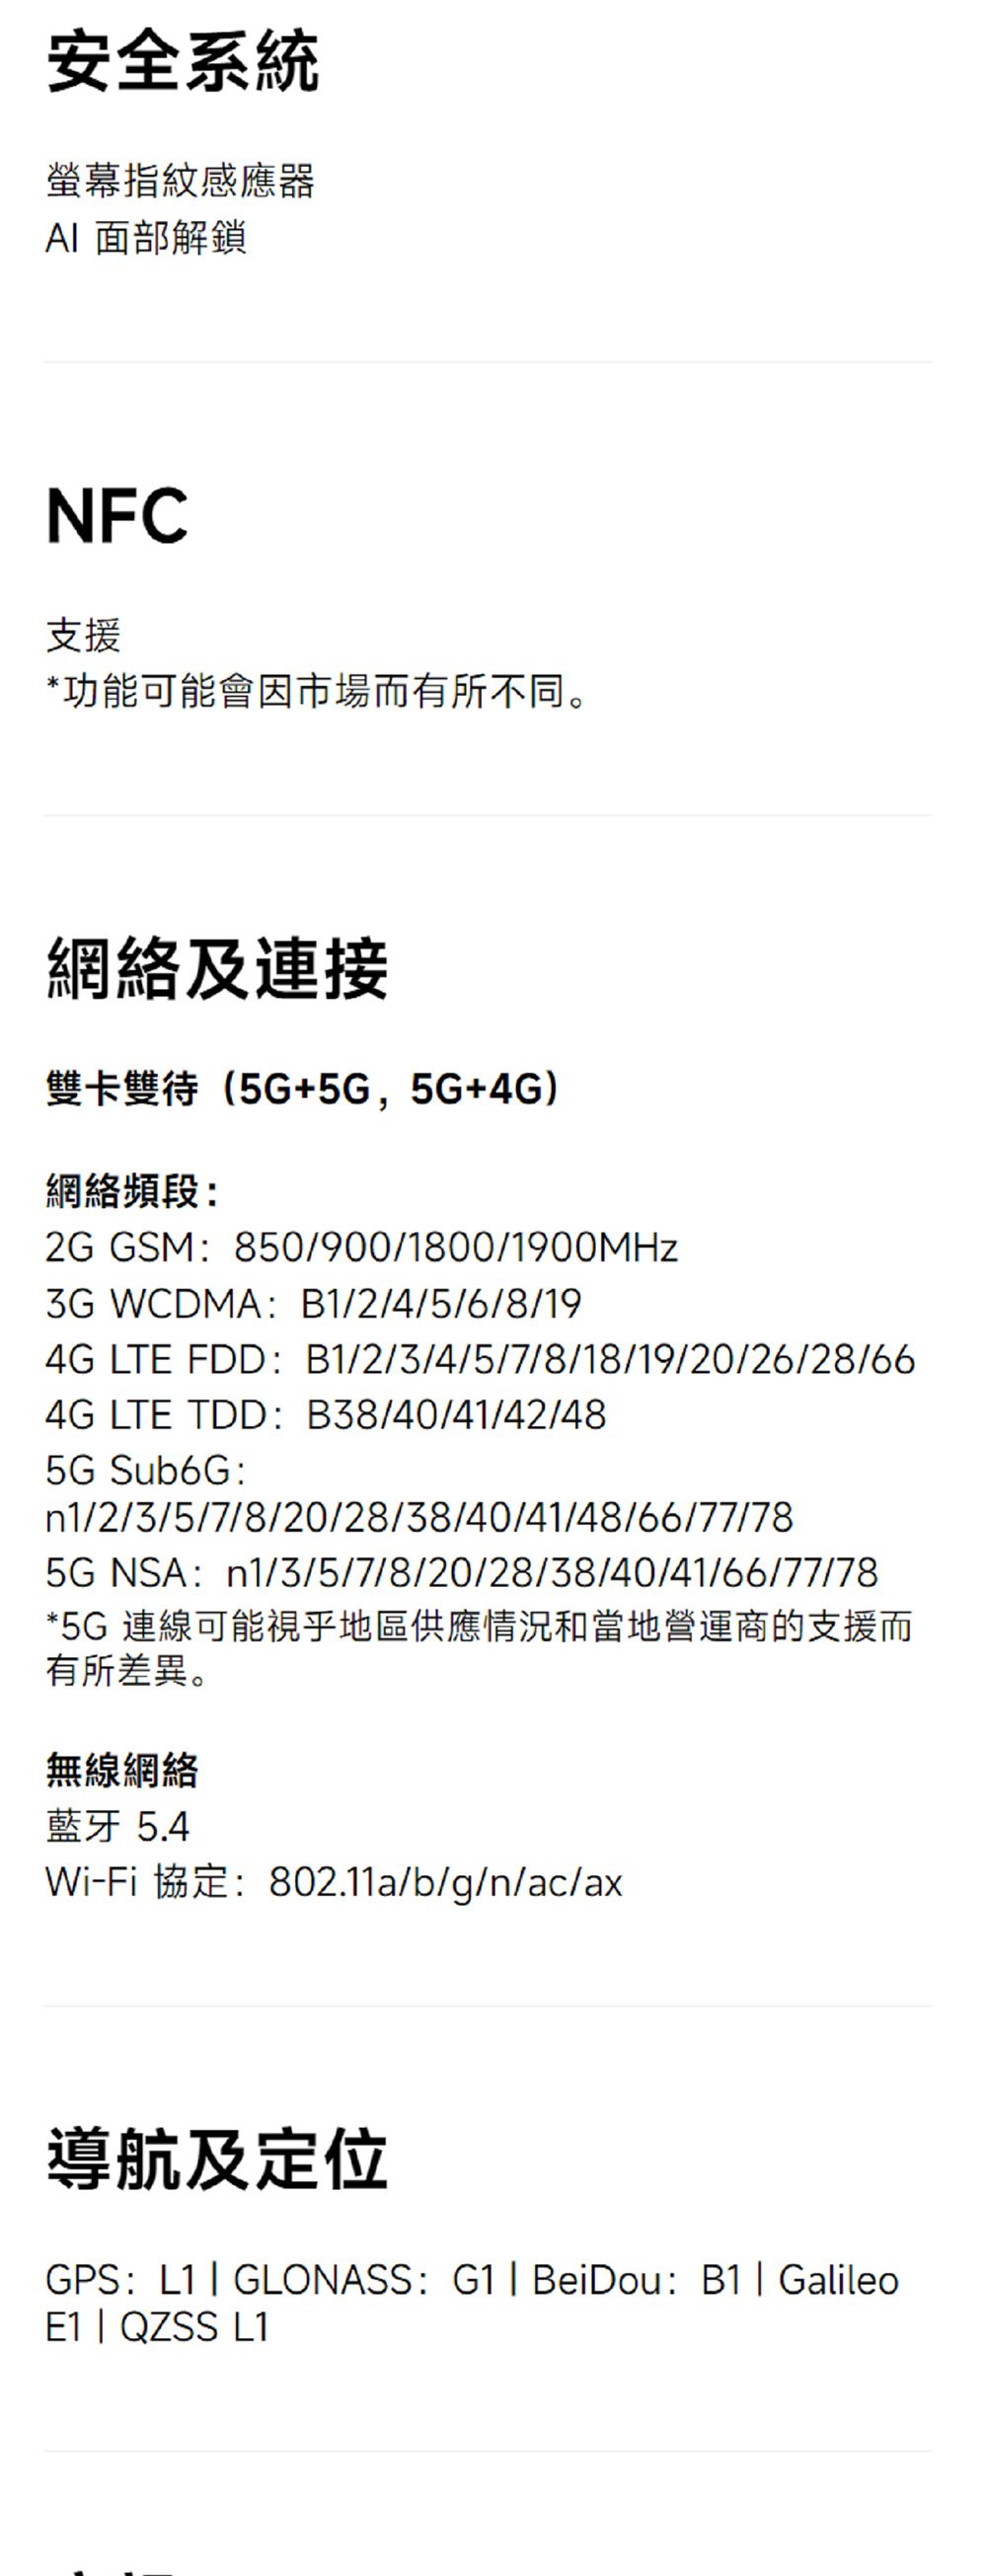 安全系統螢幕指紋感應器 面部解鎖NFC支援*功能可能會因市場而有所不同。網絡及連接雙卡雙待(5G+5G,5G+4G)網絡頻段:2G GSM:850/900/1800/1900MHz WCDMA:B1/2/4/5/6/8/194G LTE FDD:B1/2/3/4/5/7/8/18/19/20/26/28/664G LTE TDD:B38/40/41/42/485G Sub6G:n1/2/3/5/7/8/20/28/38/40/41/48/66/77/785GNSA:n1/3/5/7/8/20/28/38/40/41/66/77/78*5G 連線可能視乎地區供應情況和當地營運商的支援而有所差異。無線網絡藍牙5.4Wi-Fi 協定:802.11a/b/g/n/ac/ax導航及定位GPS:L1 GLONASS: G1| BeiDou: B1| GalileoE1 | QZSS L1